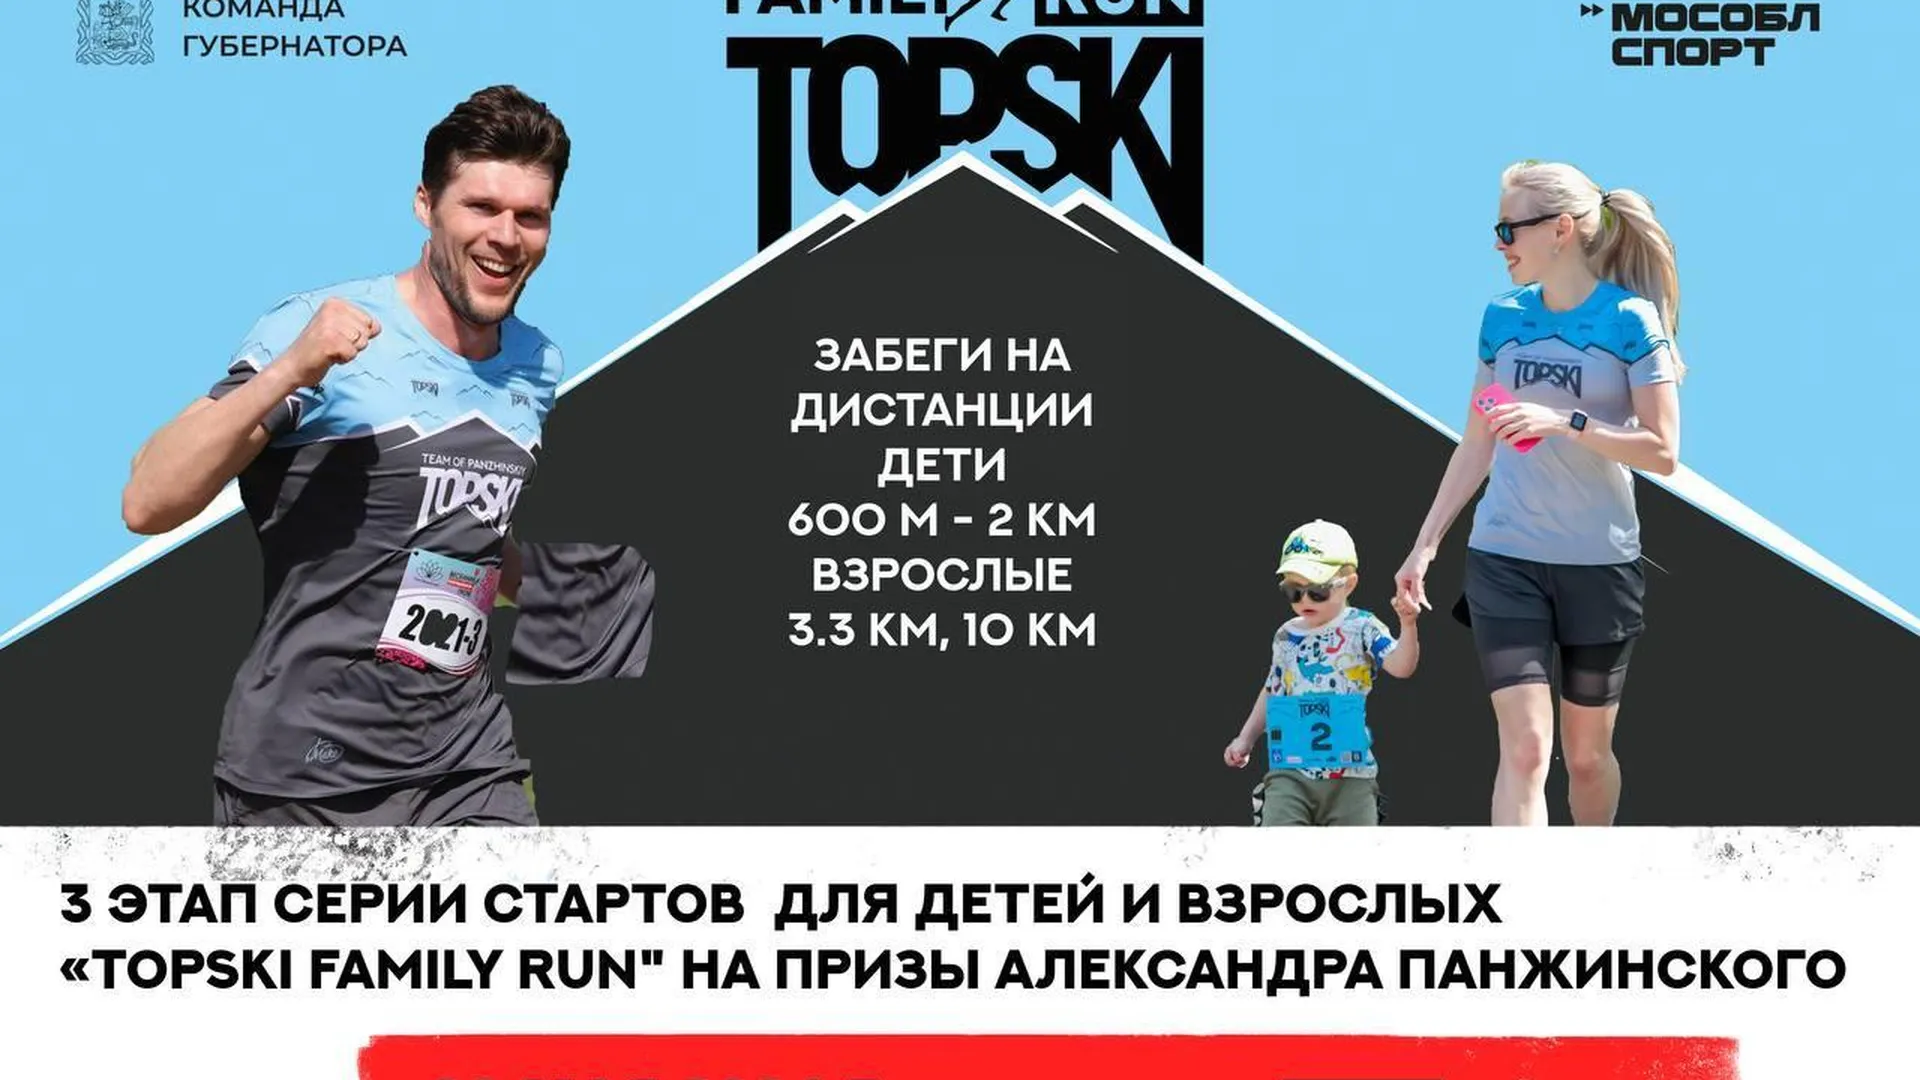 В Одинцове пройдет 3 этап серии забегов для детей и взрослых «TOPSKI Family Run»